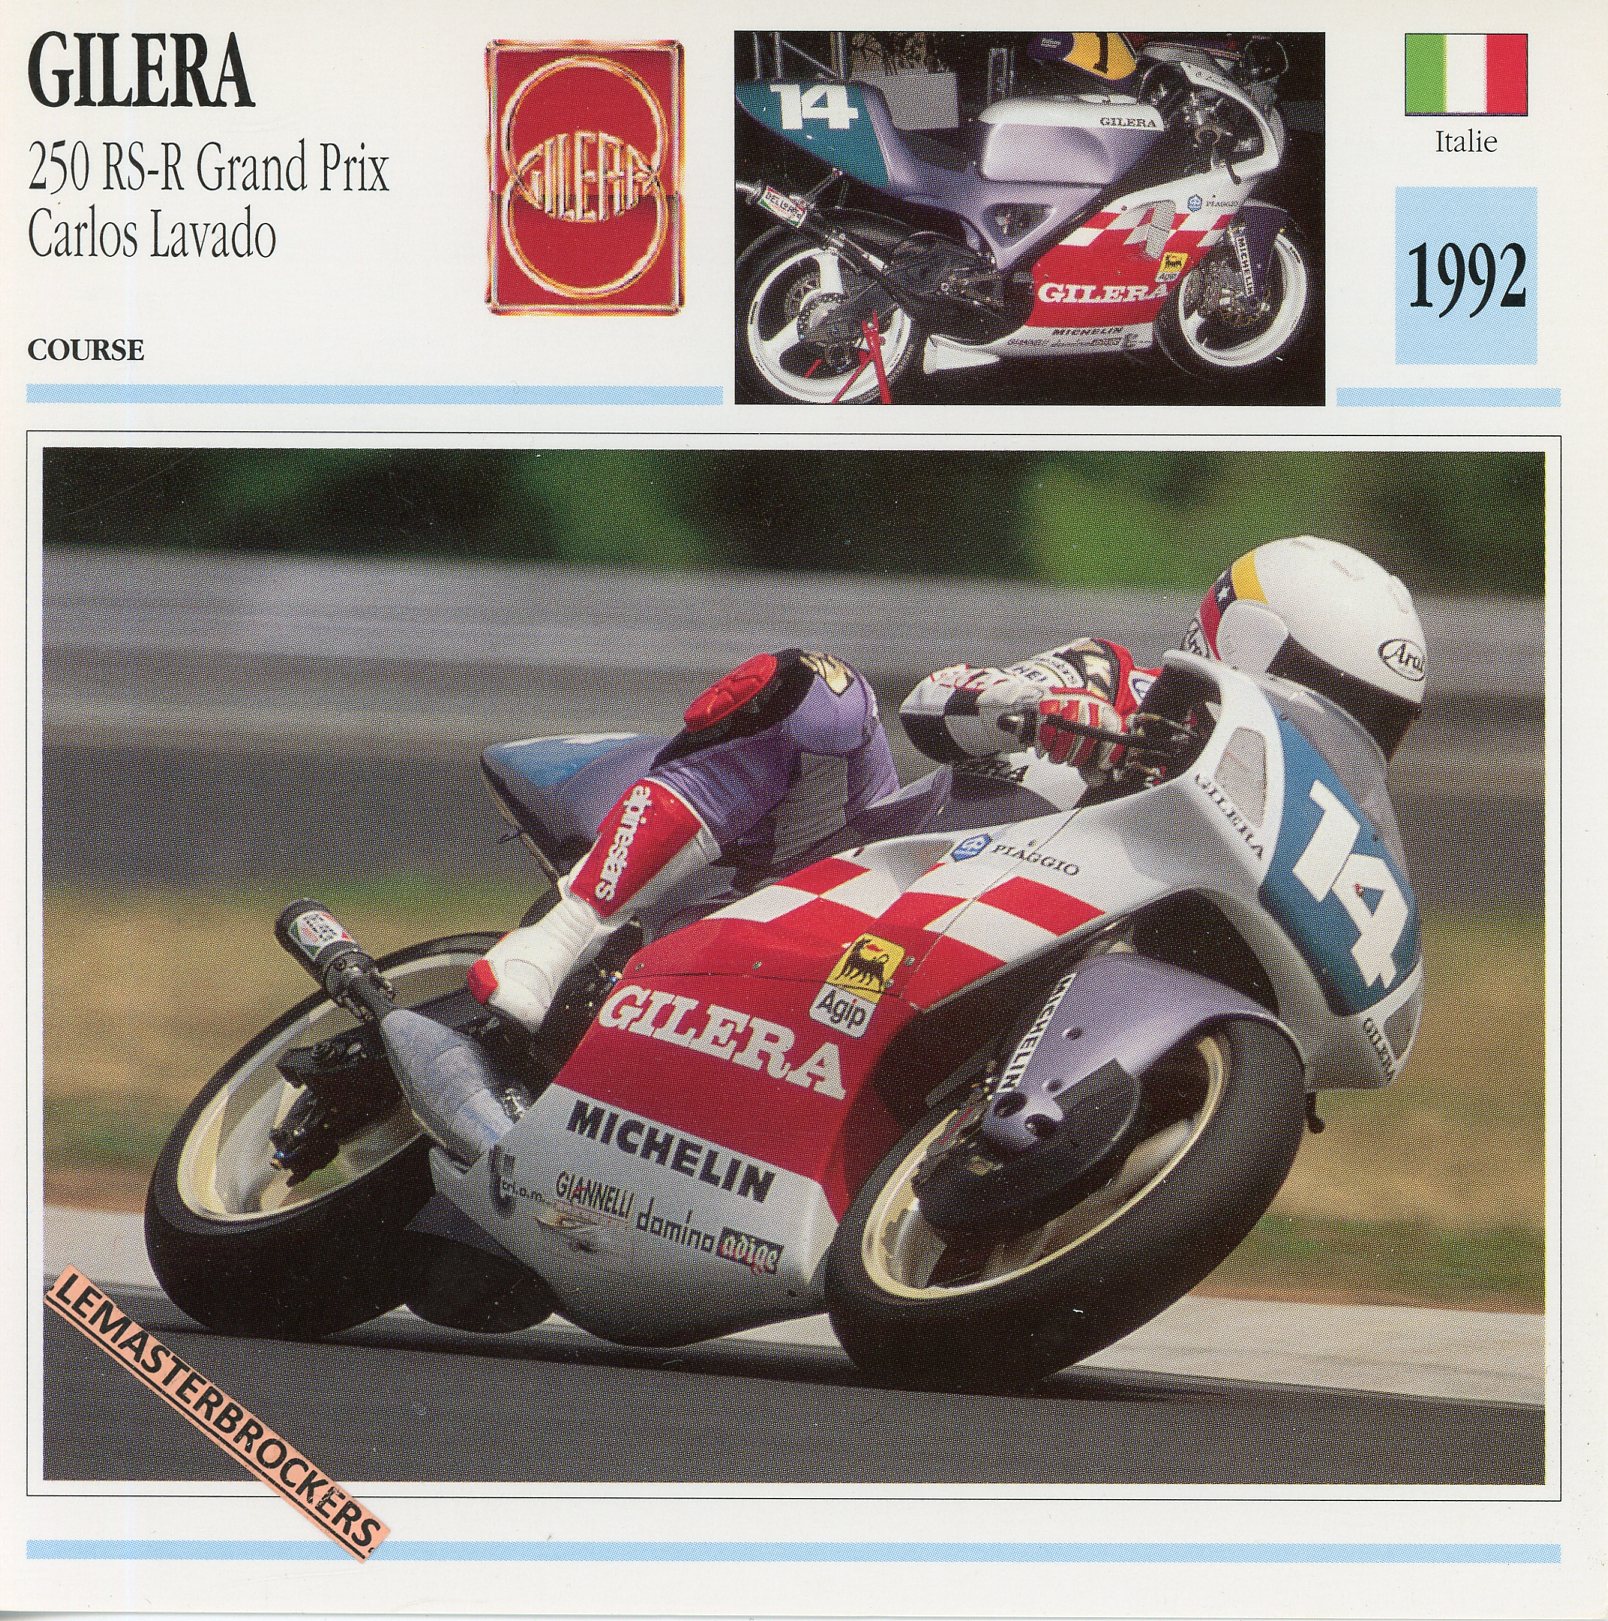 GILERA-250-RSR-CARLOS-LAVADO-1992-FICHE-MOTO-MOTORCYCLE-CARDS-ATLAS-LEMASTERBROCKERS